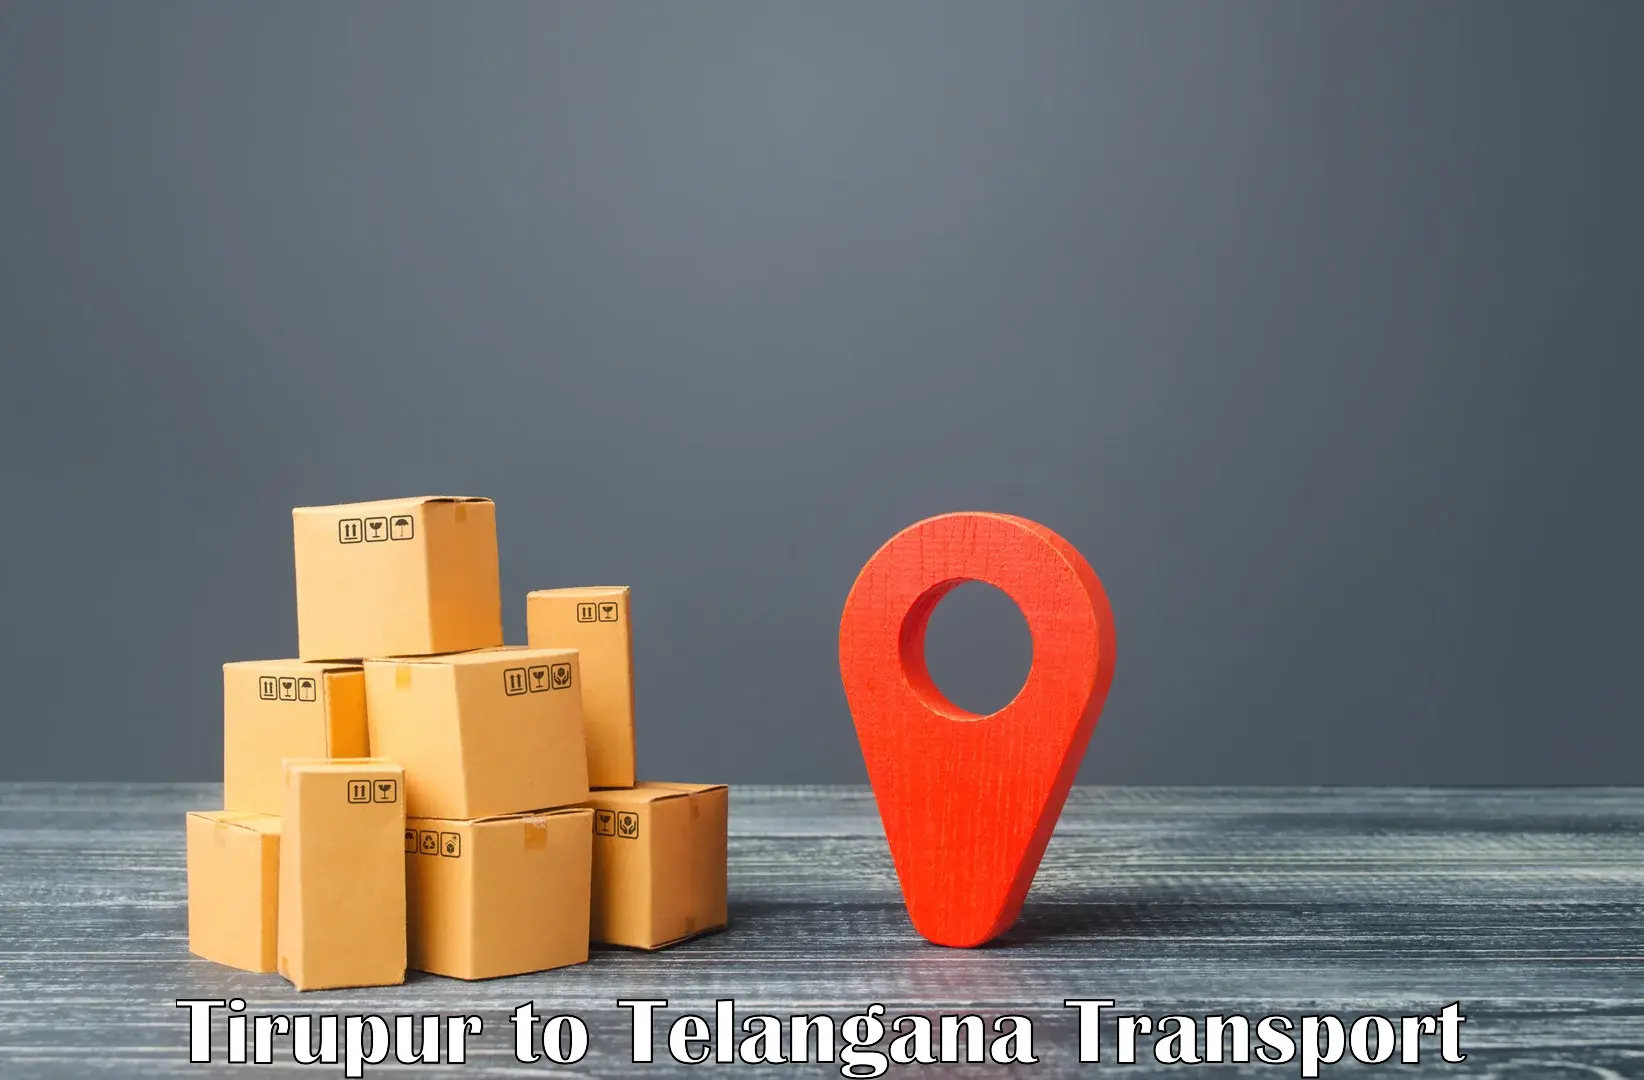 Container transport service in Tirupur to Thirumalagiri